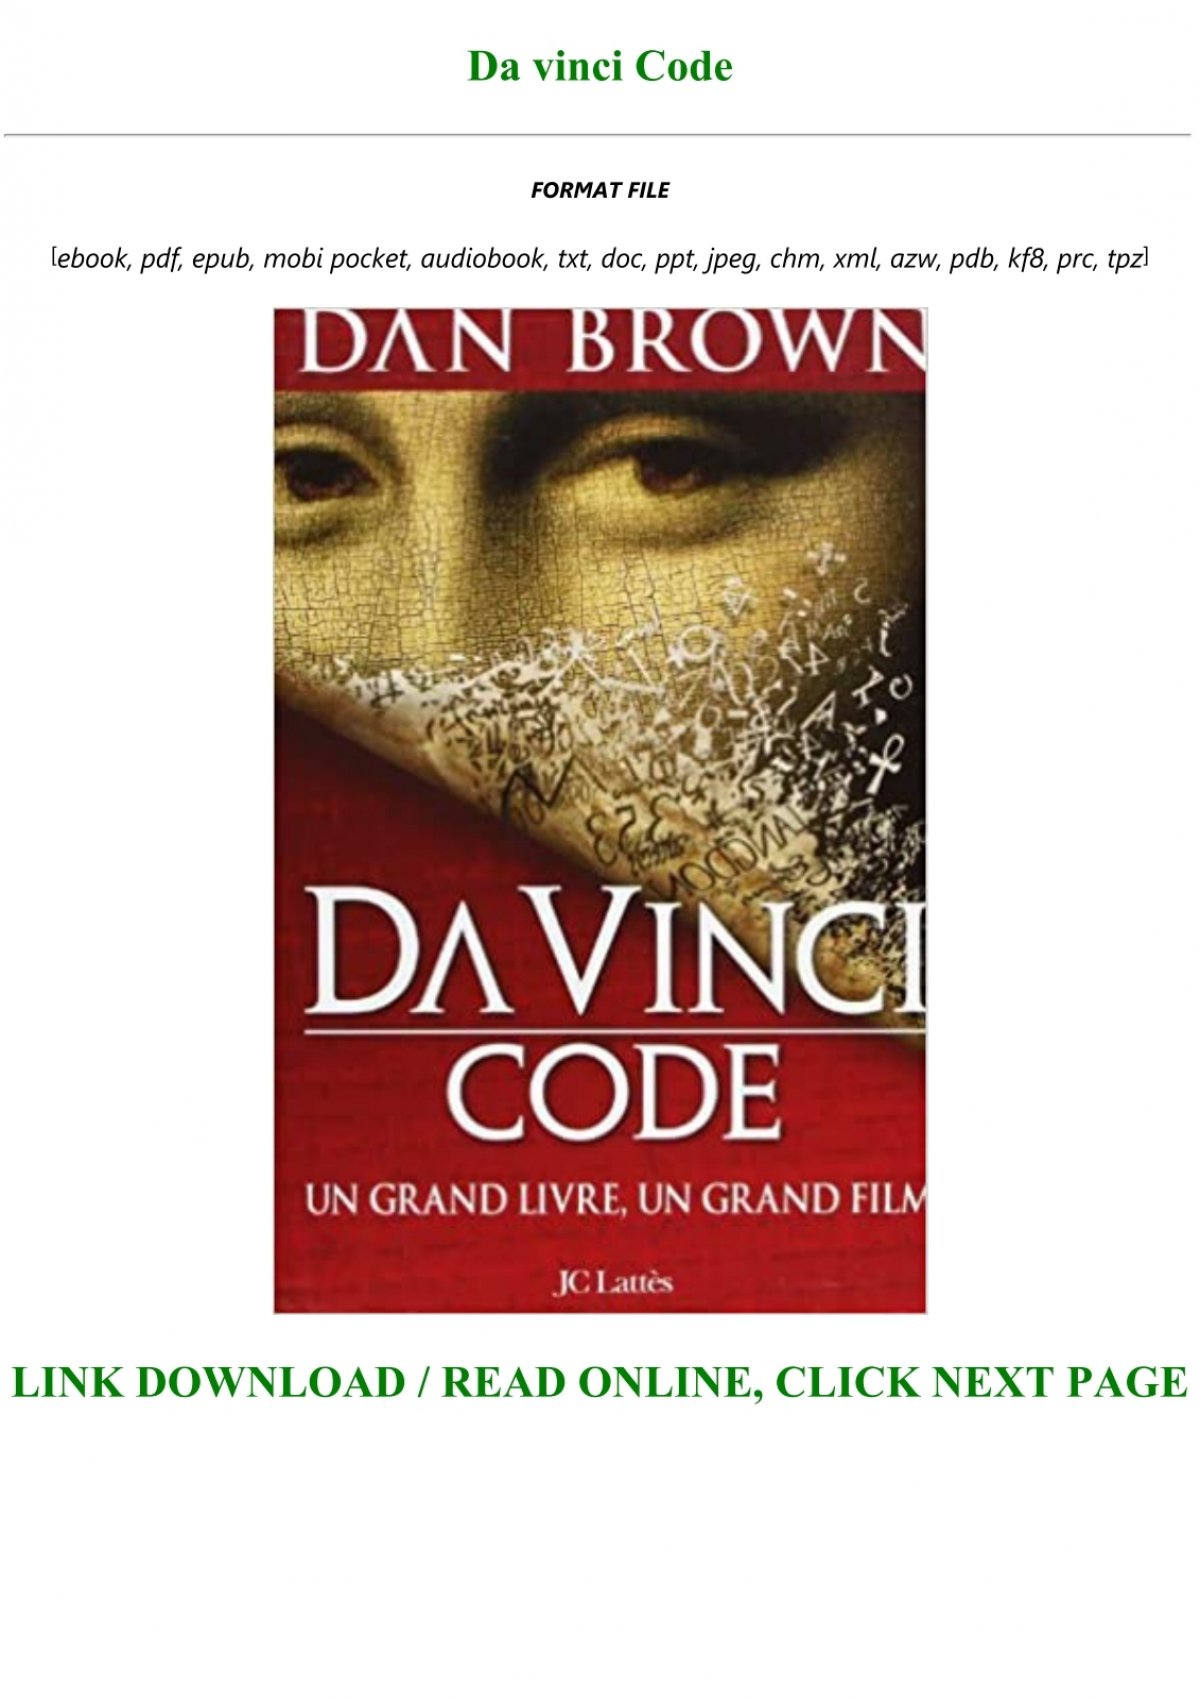 Download novel dan brown bahasa indonesia pdf